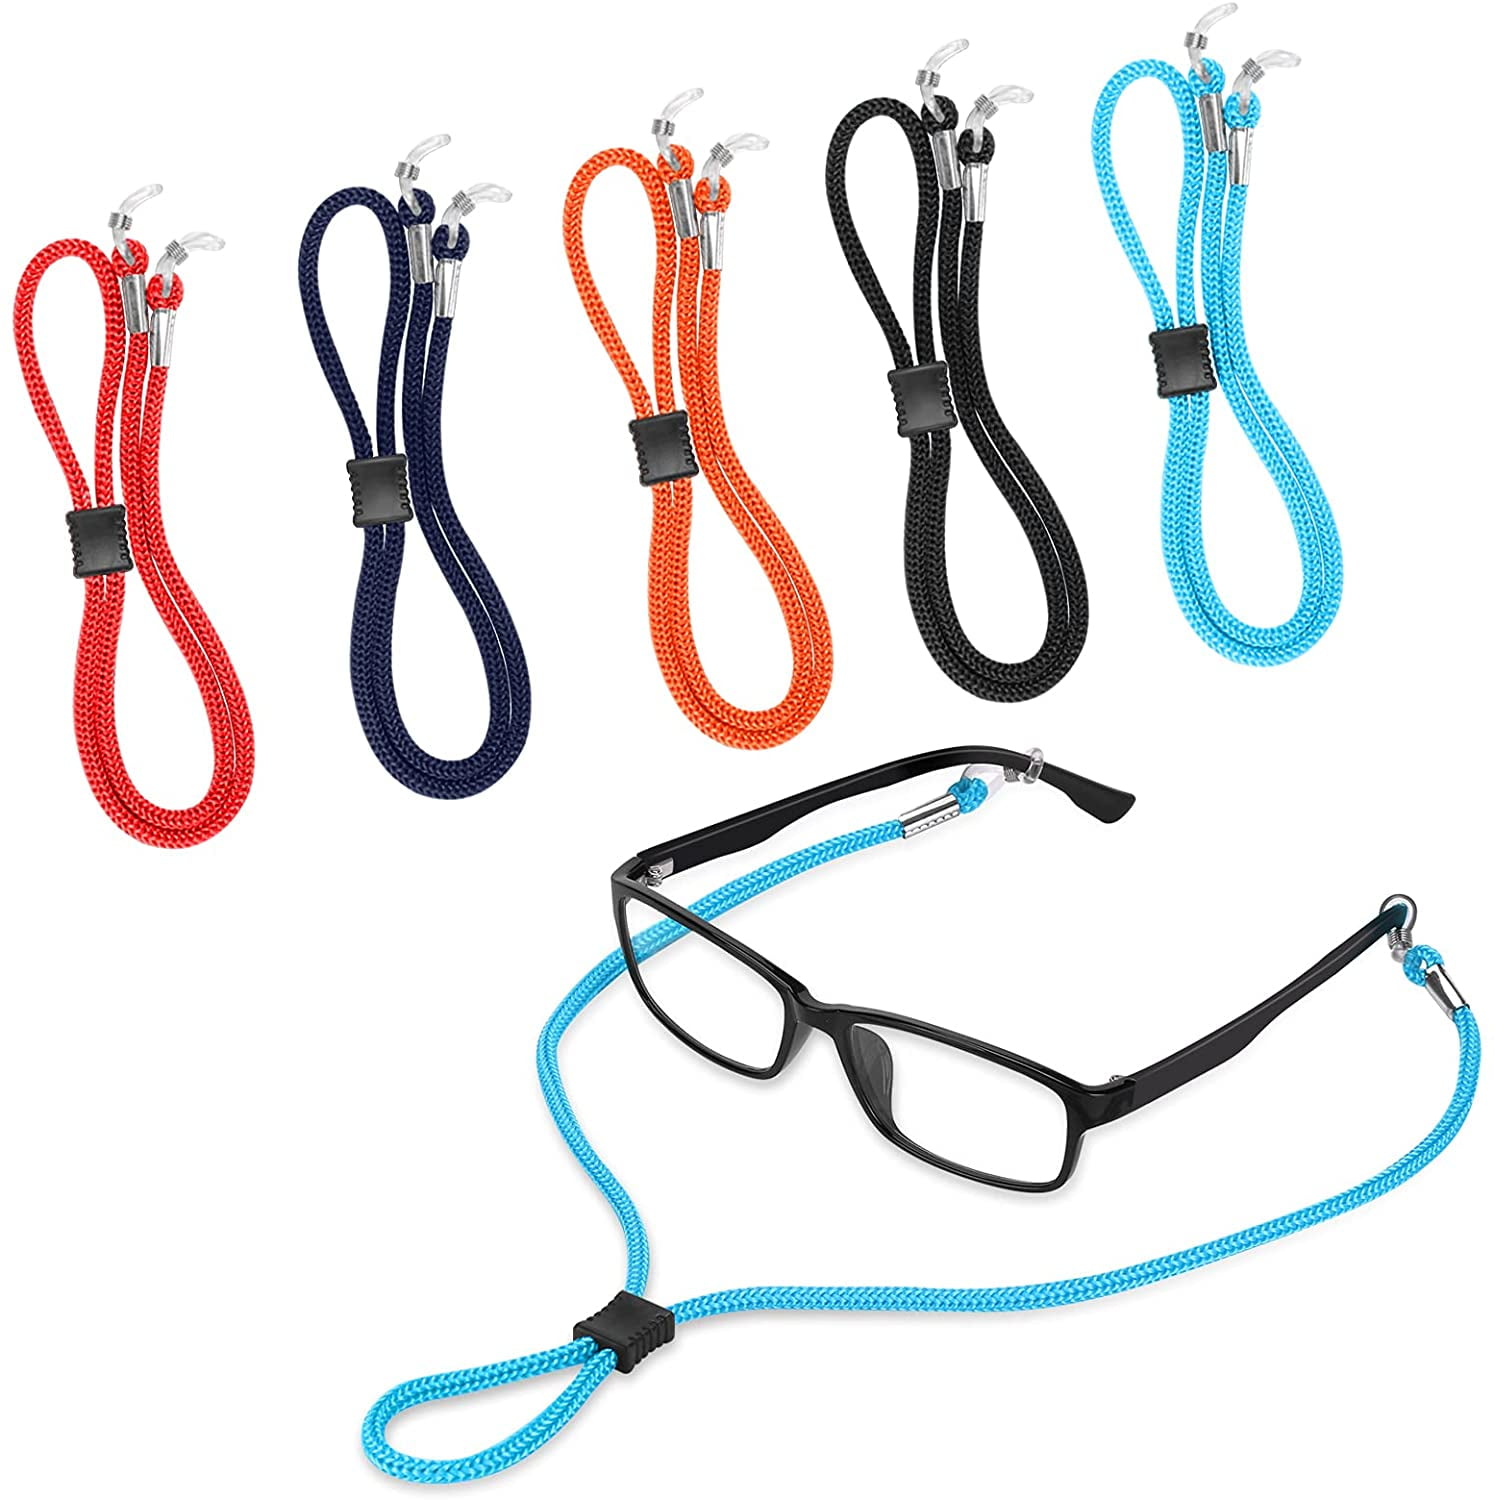 TEN 10X Eyeglasses Sunglasses Neoprene Fishing Retainer Cord Durable USA SELLER 